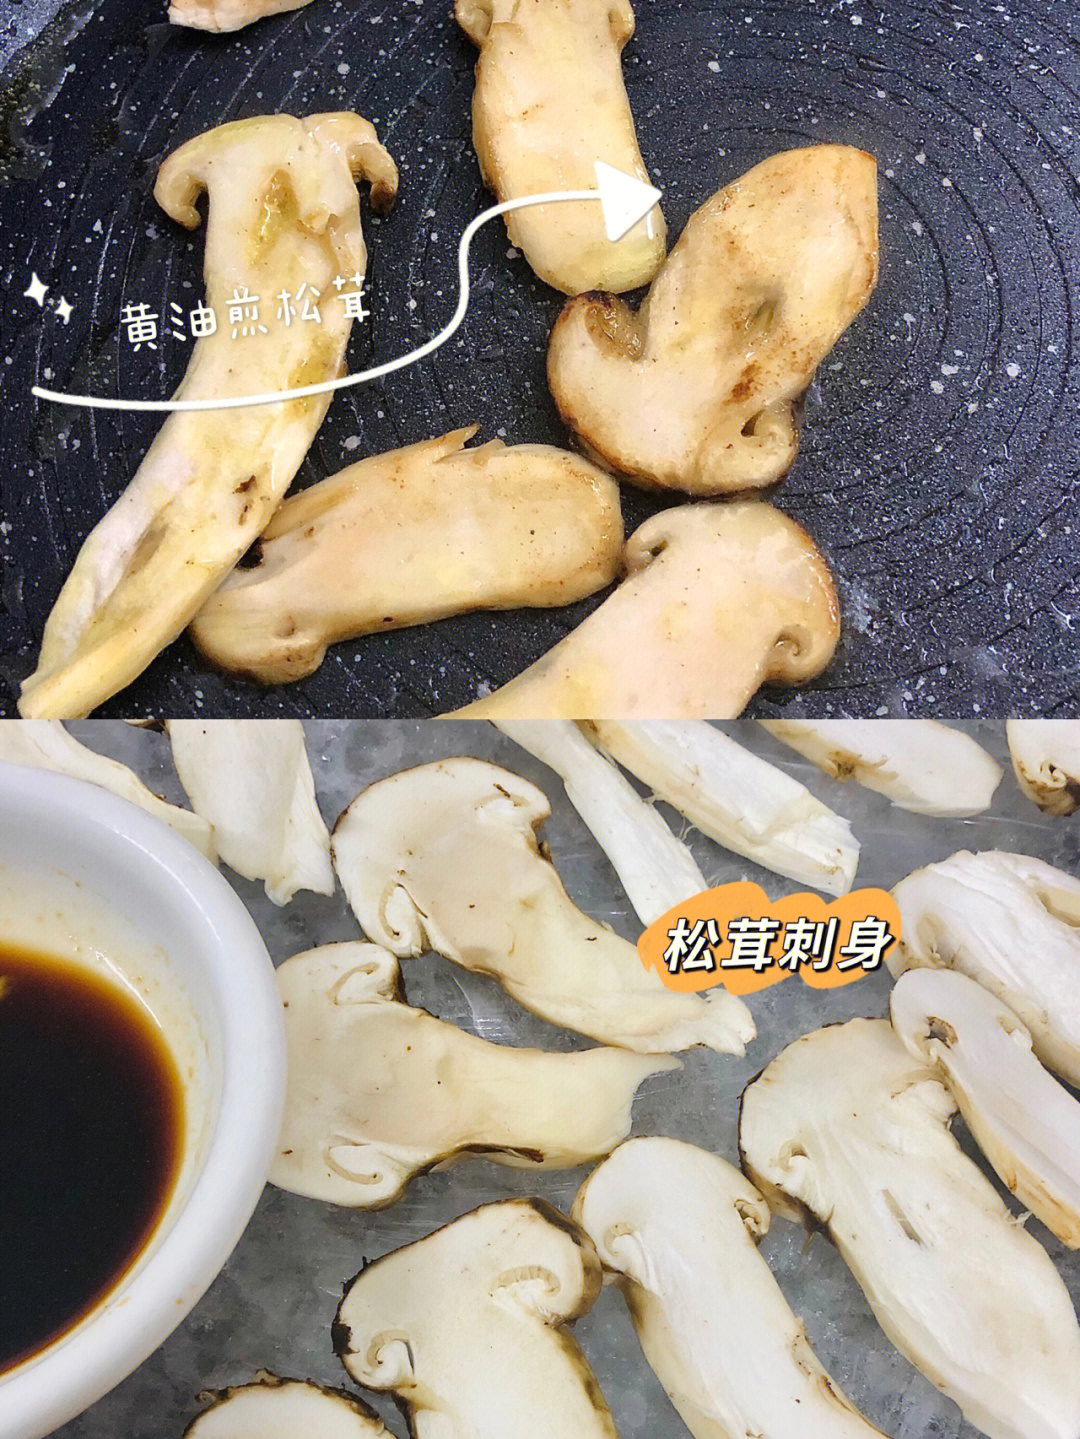 赤松茸的吃法图片